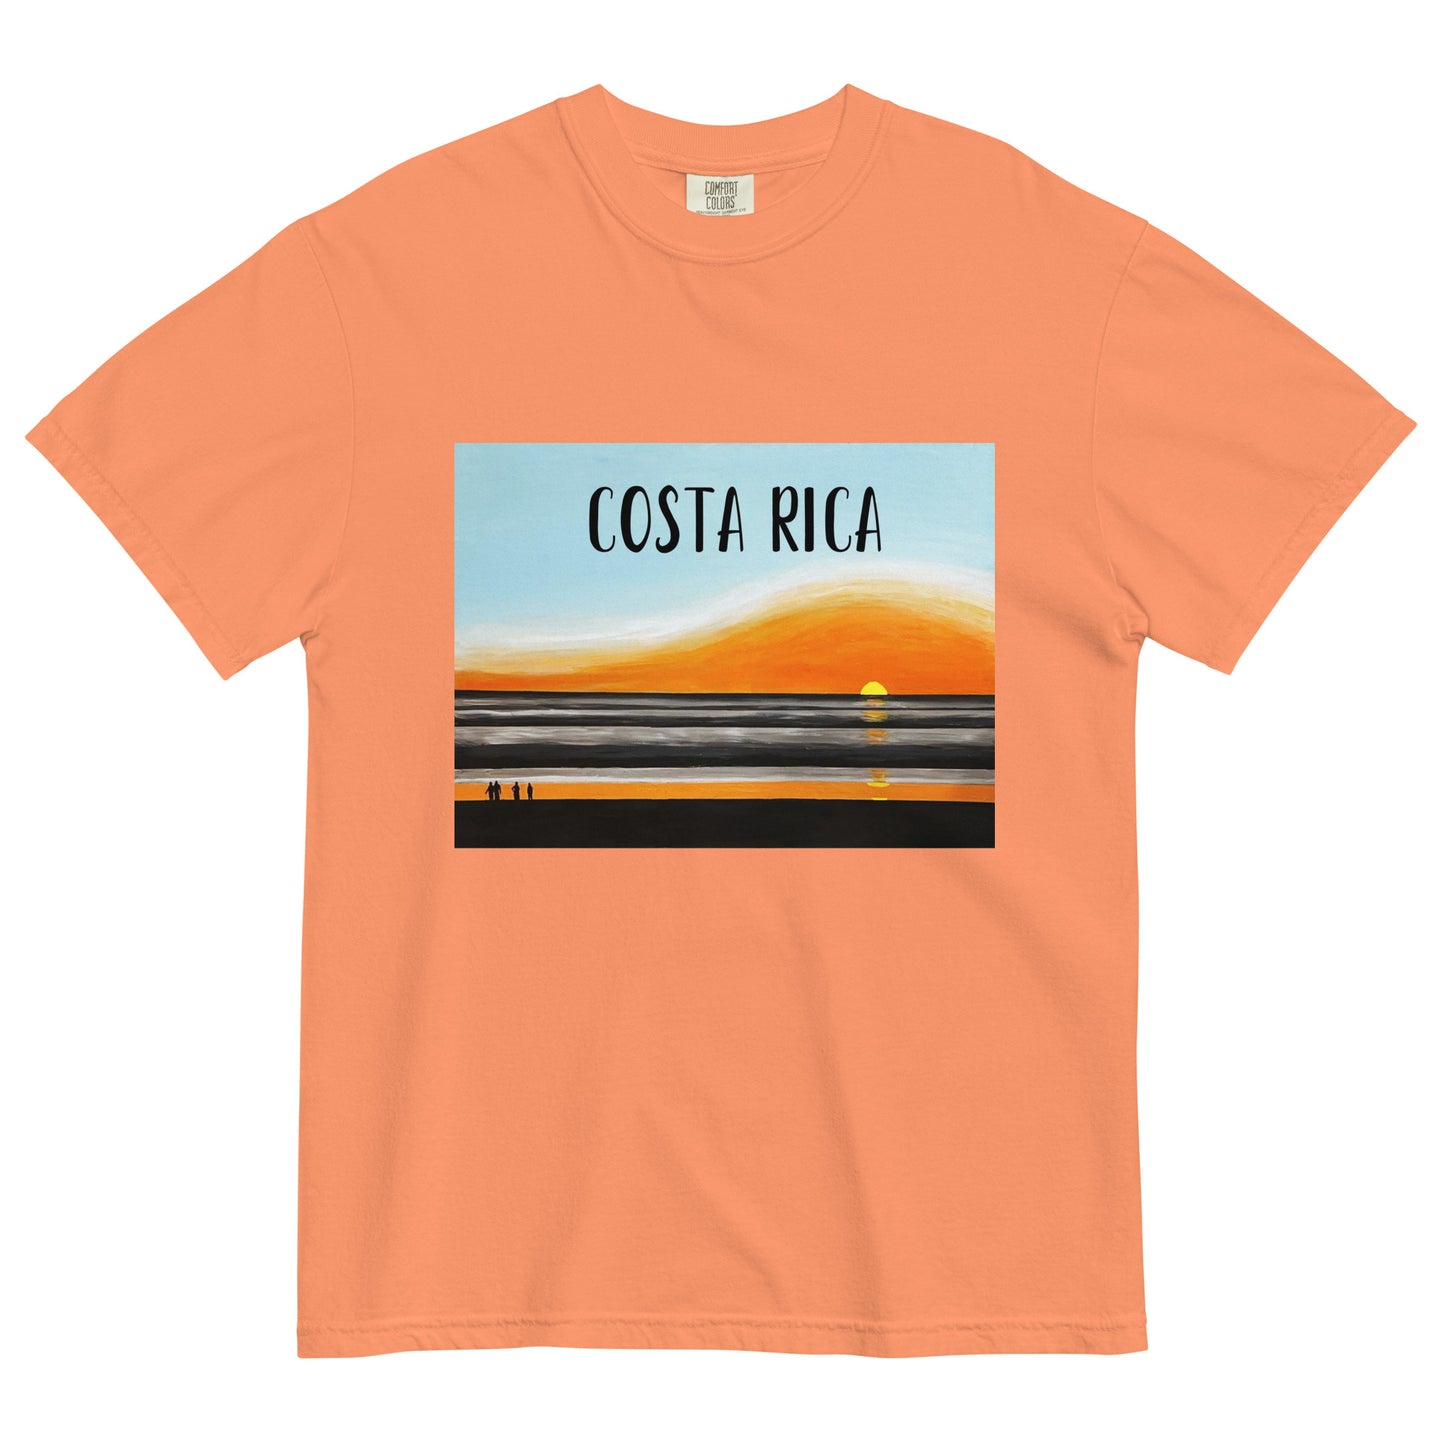 COSTA RICA-  Unisex garment-dyed heavyweight t-shirt